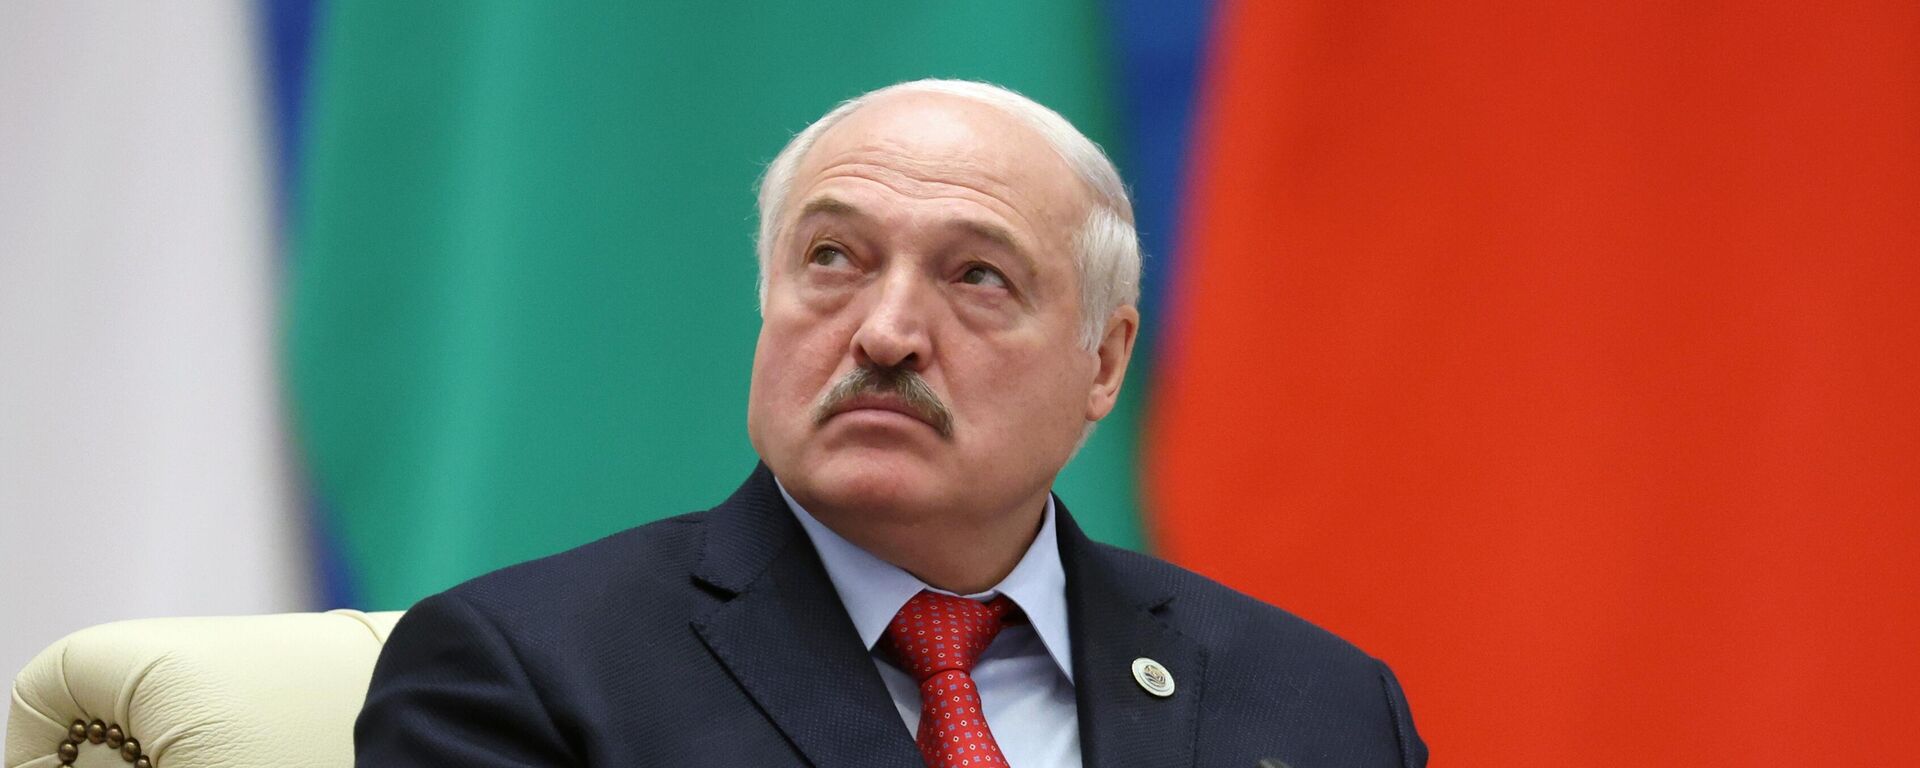 Prezident Belorussii Aleksandr Lukašenko na zasedanii Soveta glav stran-učastnic ŠOS v rasširennom sostave v Samarkande, Uzbekistan - Sputnik Srbija, 1920, 25.02.2023